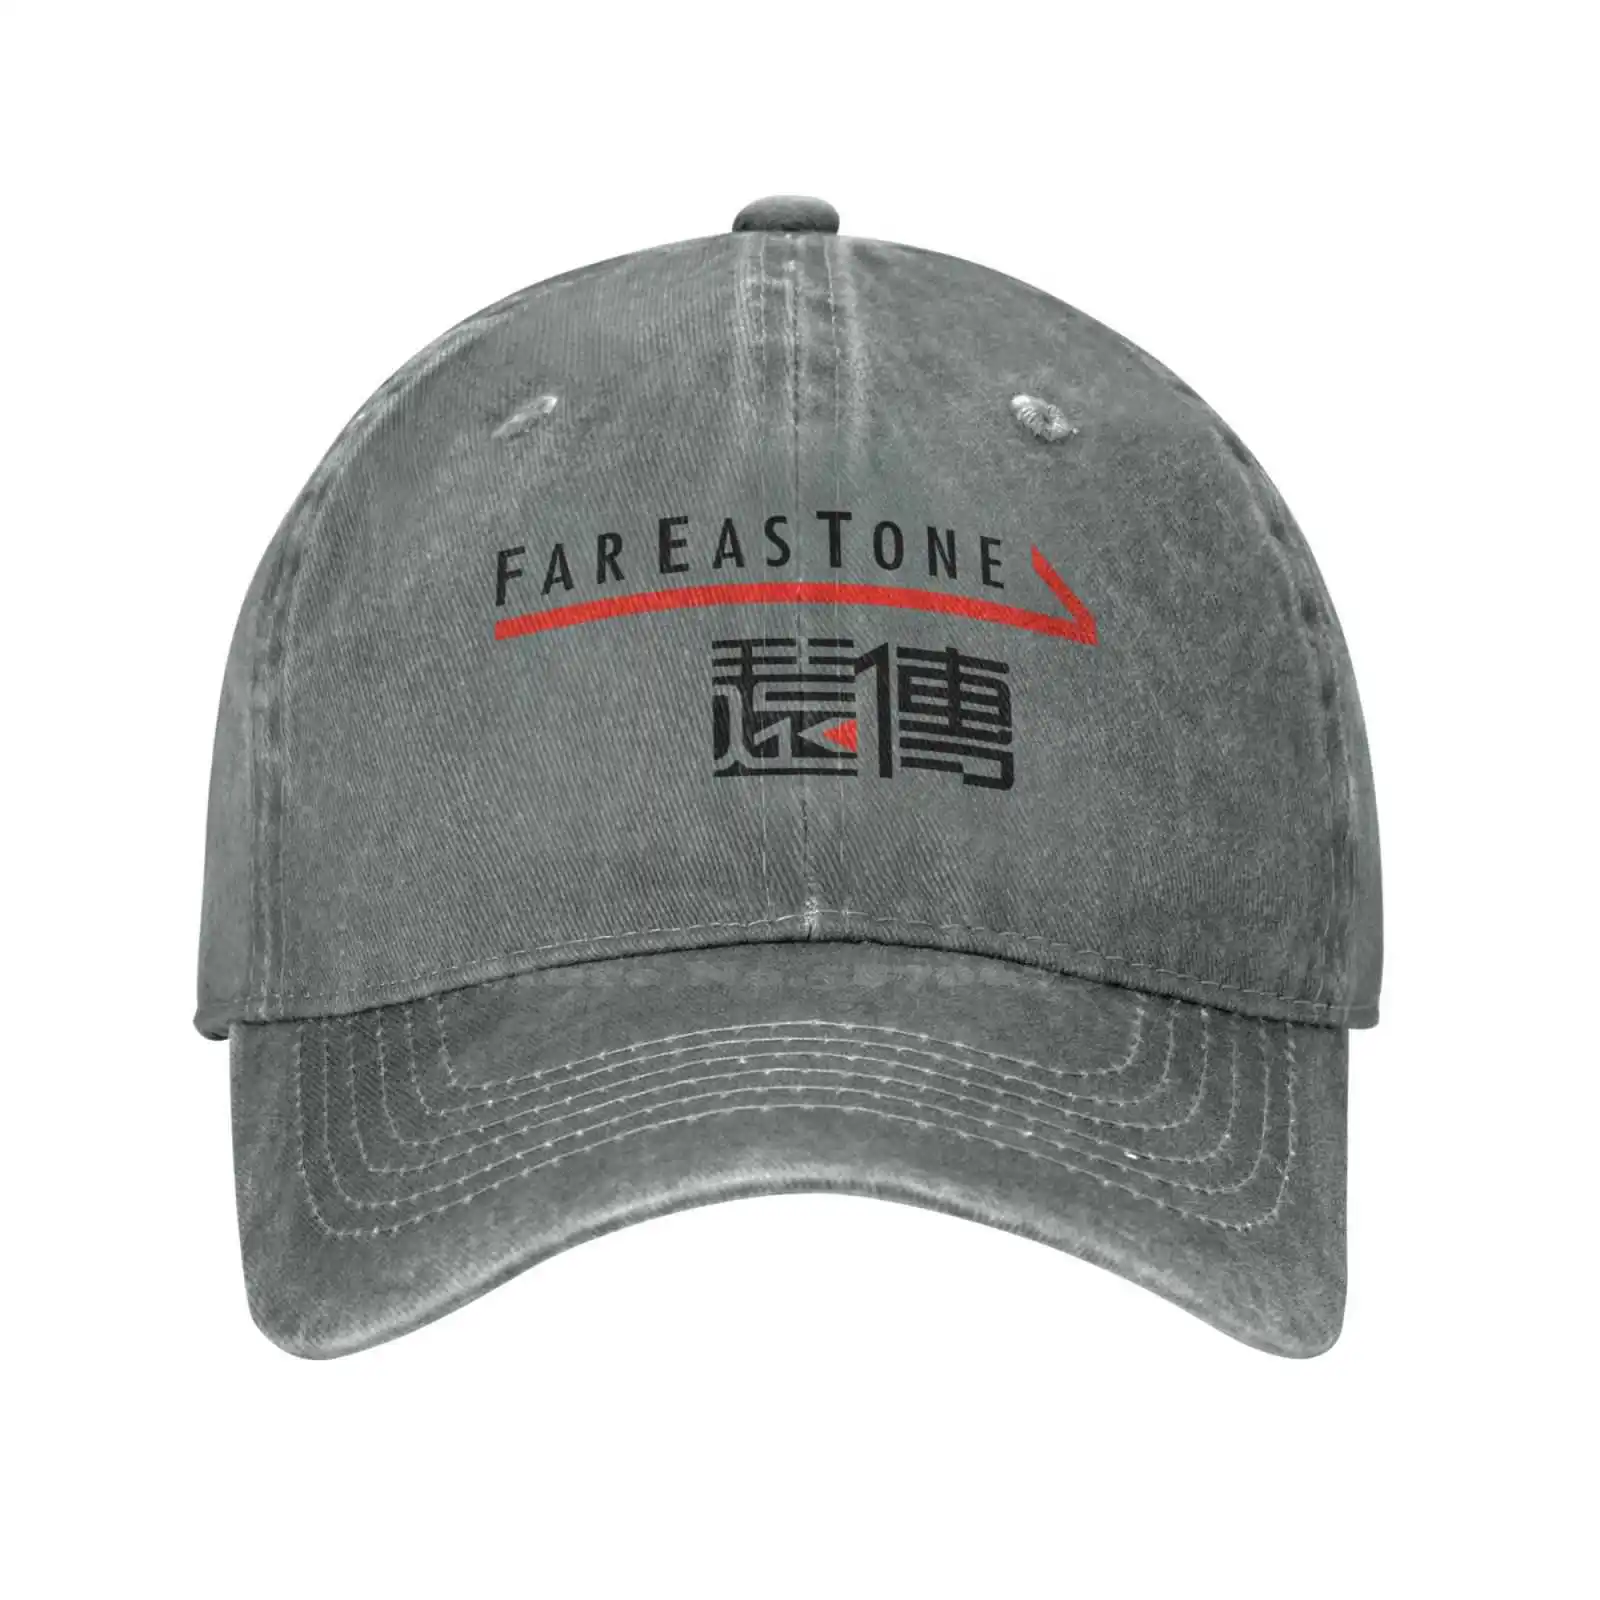 Графический принт логотипа FarEasTone Telecommunications Co Повседневная джинсовая кепка Вязаная шапка Бейсболка